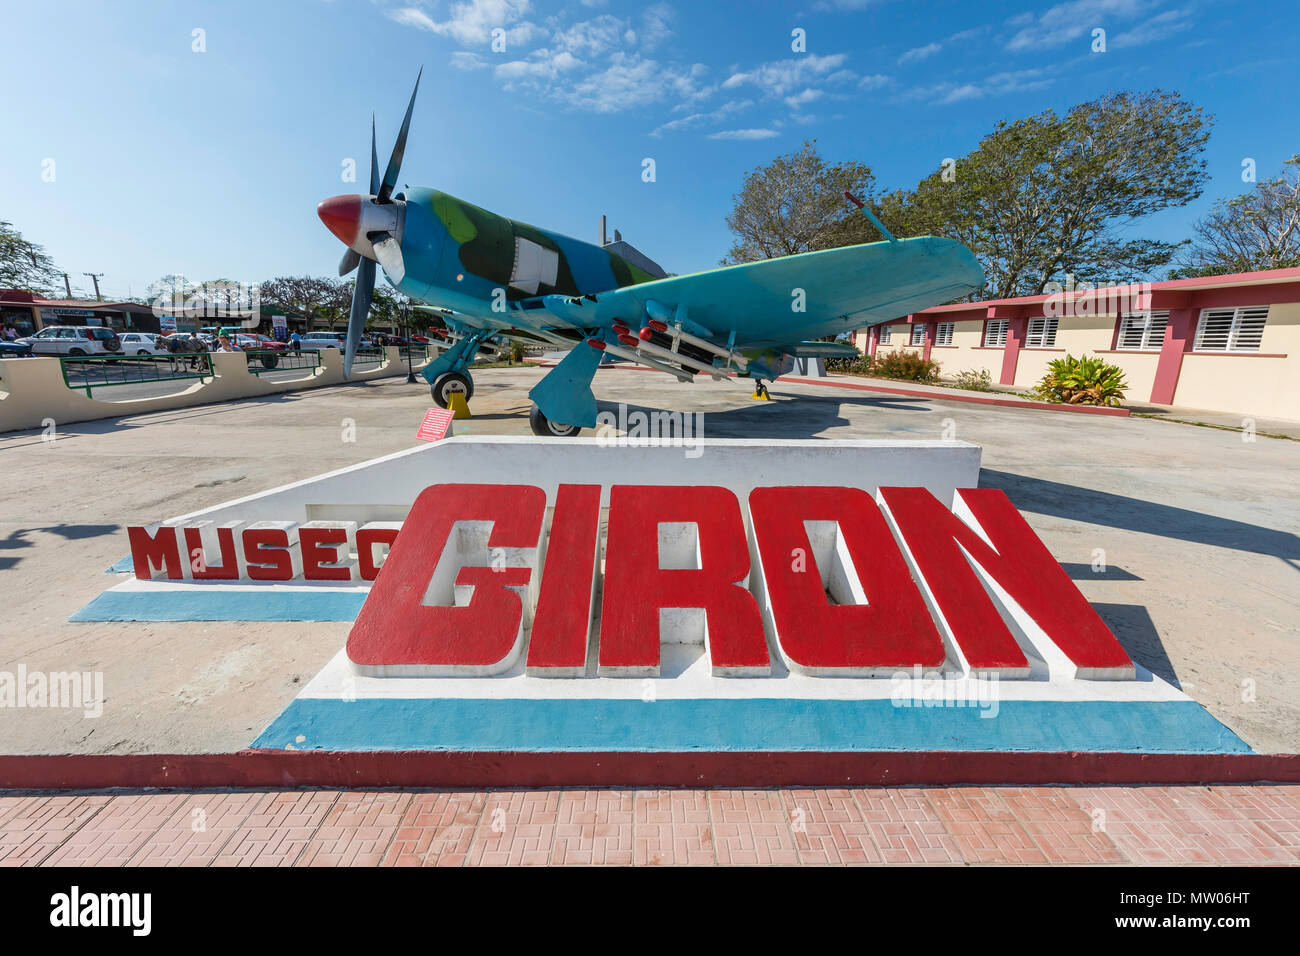 Un britannico realizzato la furia del mare da combattimento aereo sul display in corrispondenza della Baia dei Maiali Museum, Playa Girón, Cuba. Foto Stock